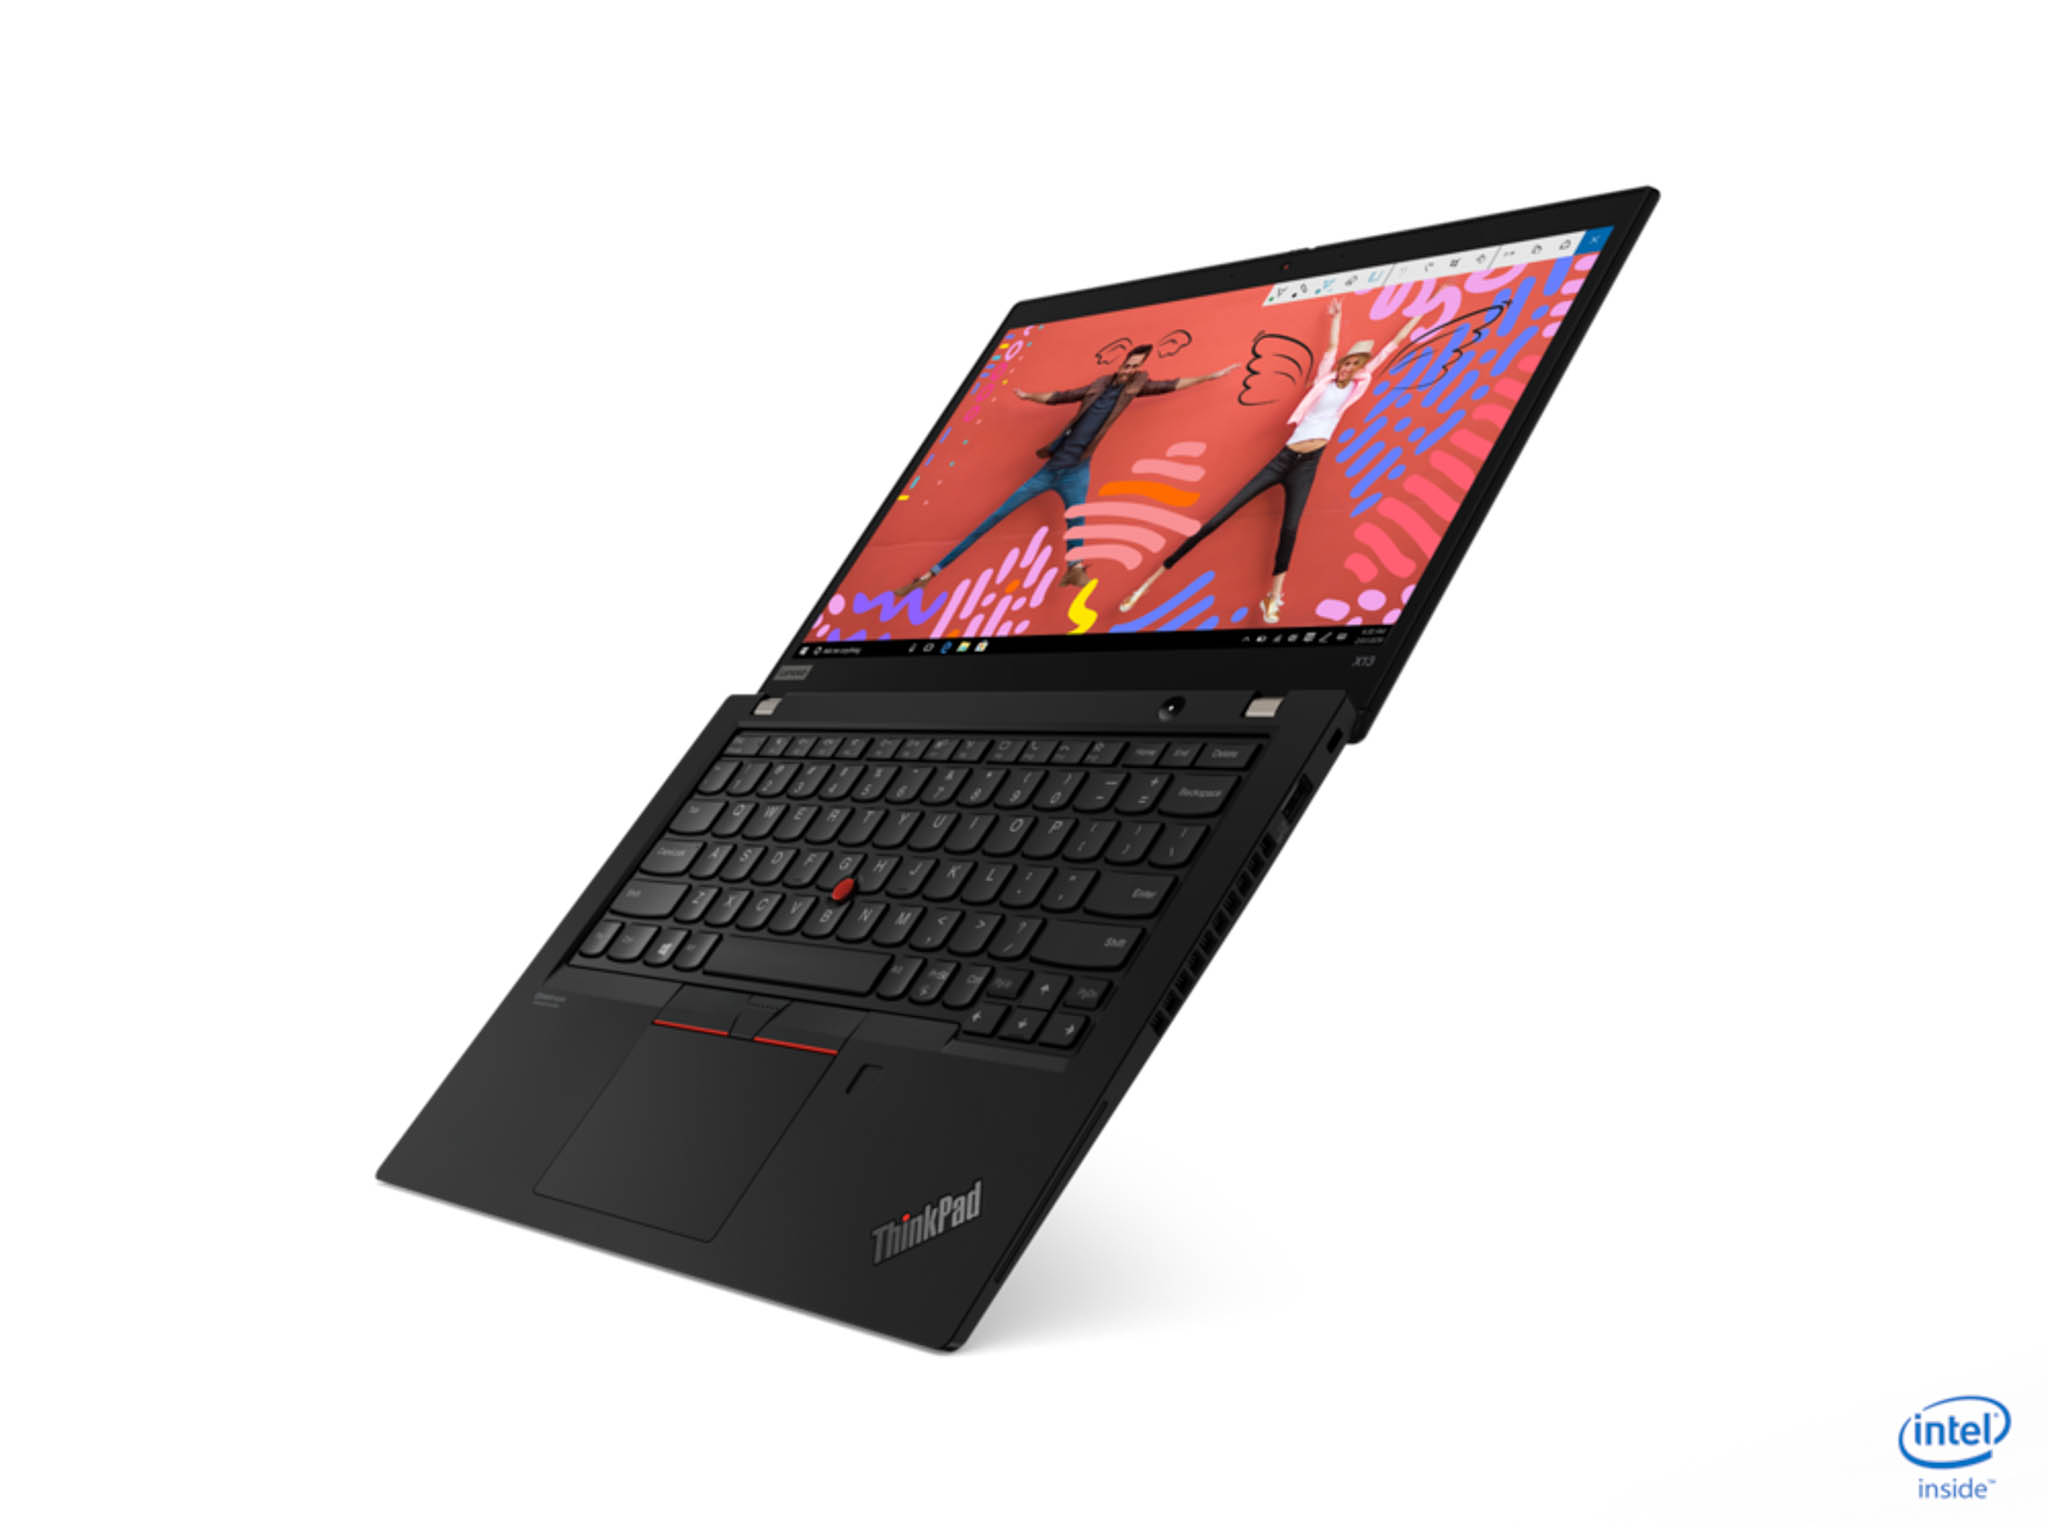 Lenovo ra mắt loạt laptop ThinkPad mới dành cho doanh nghiệp